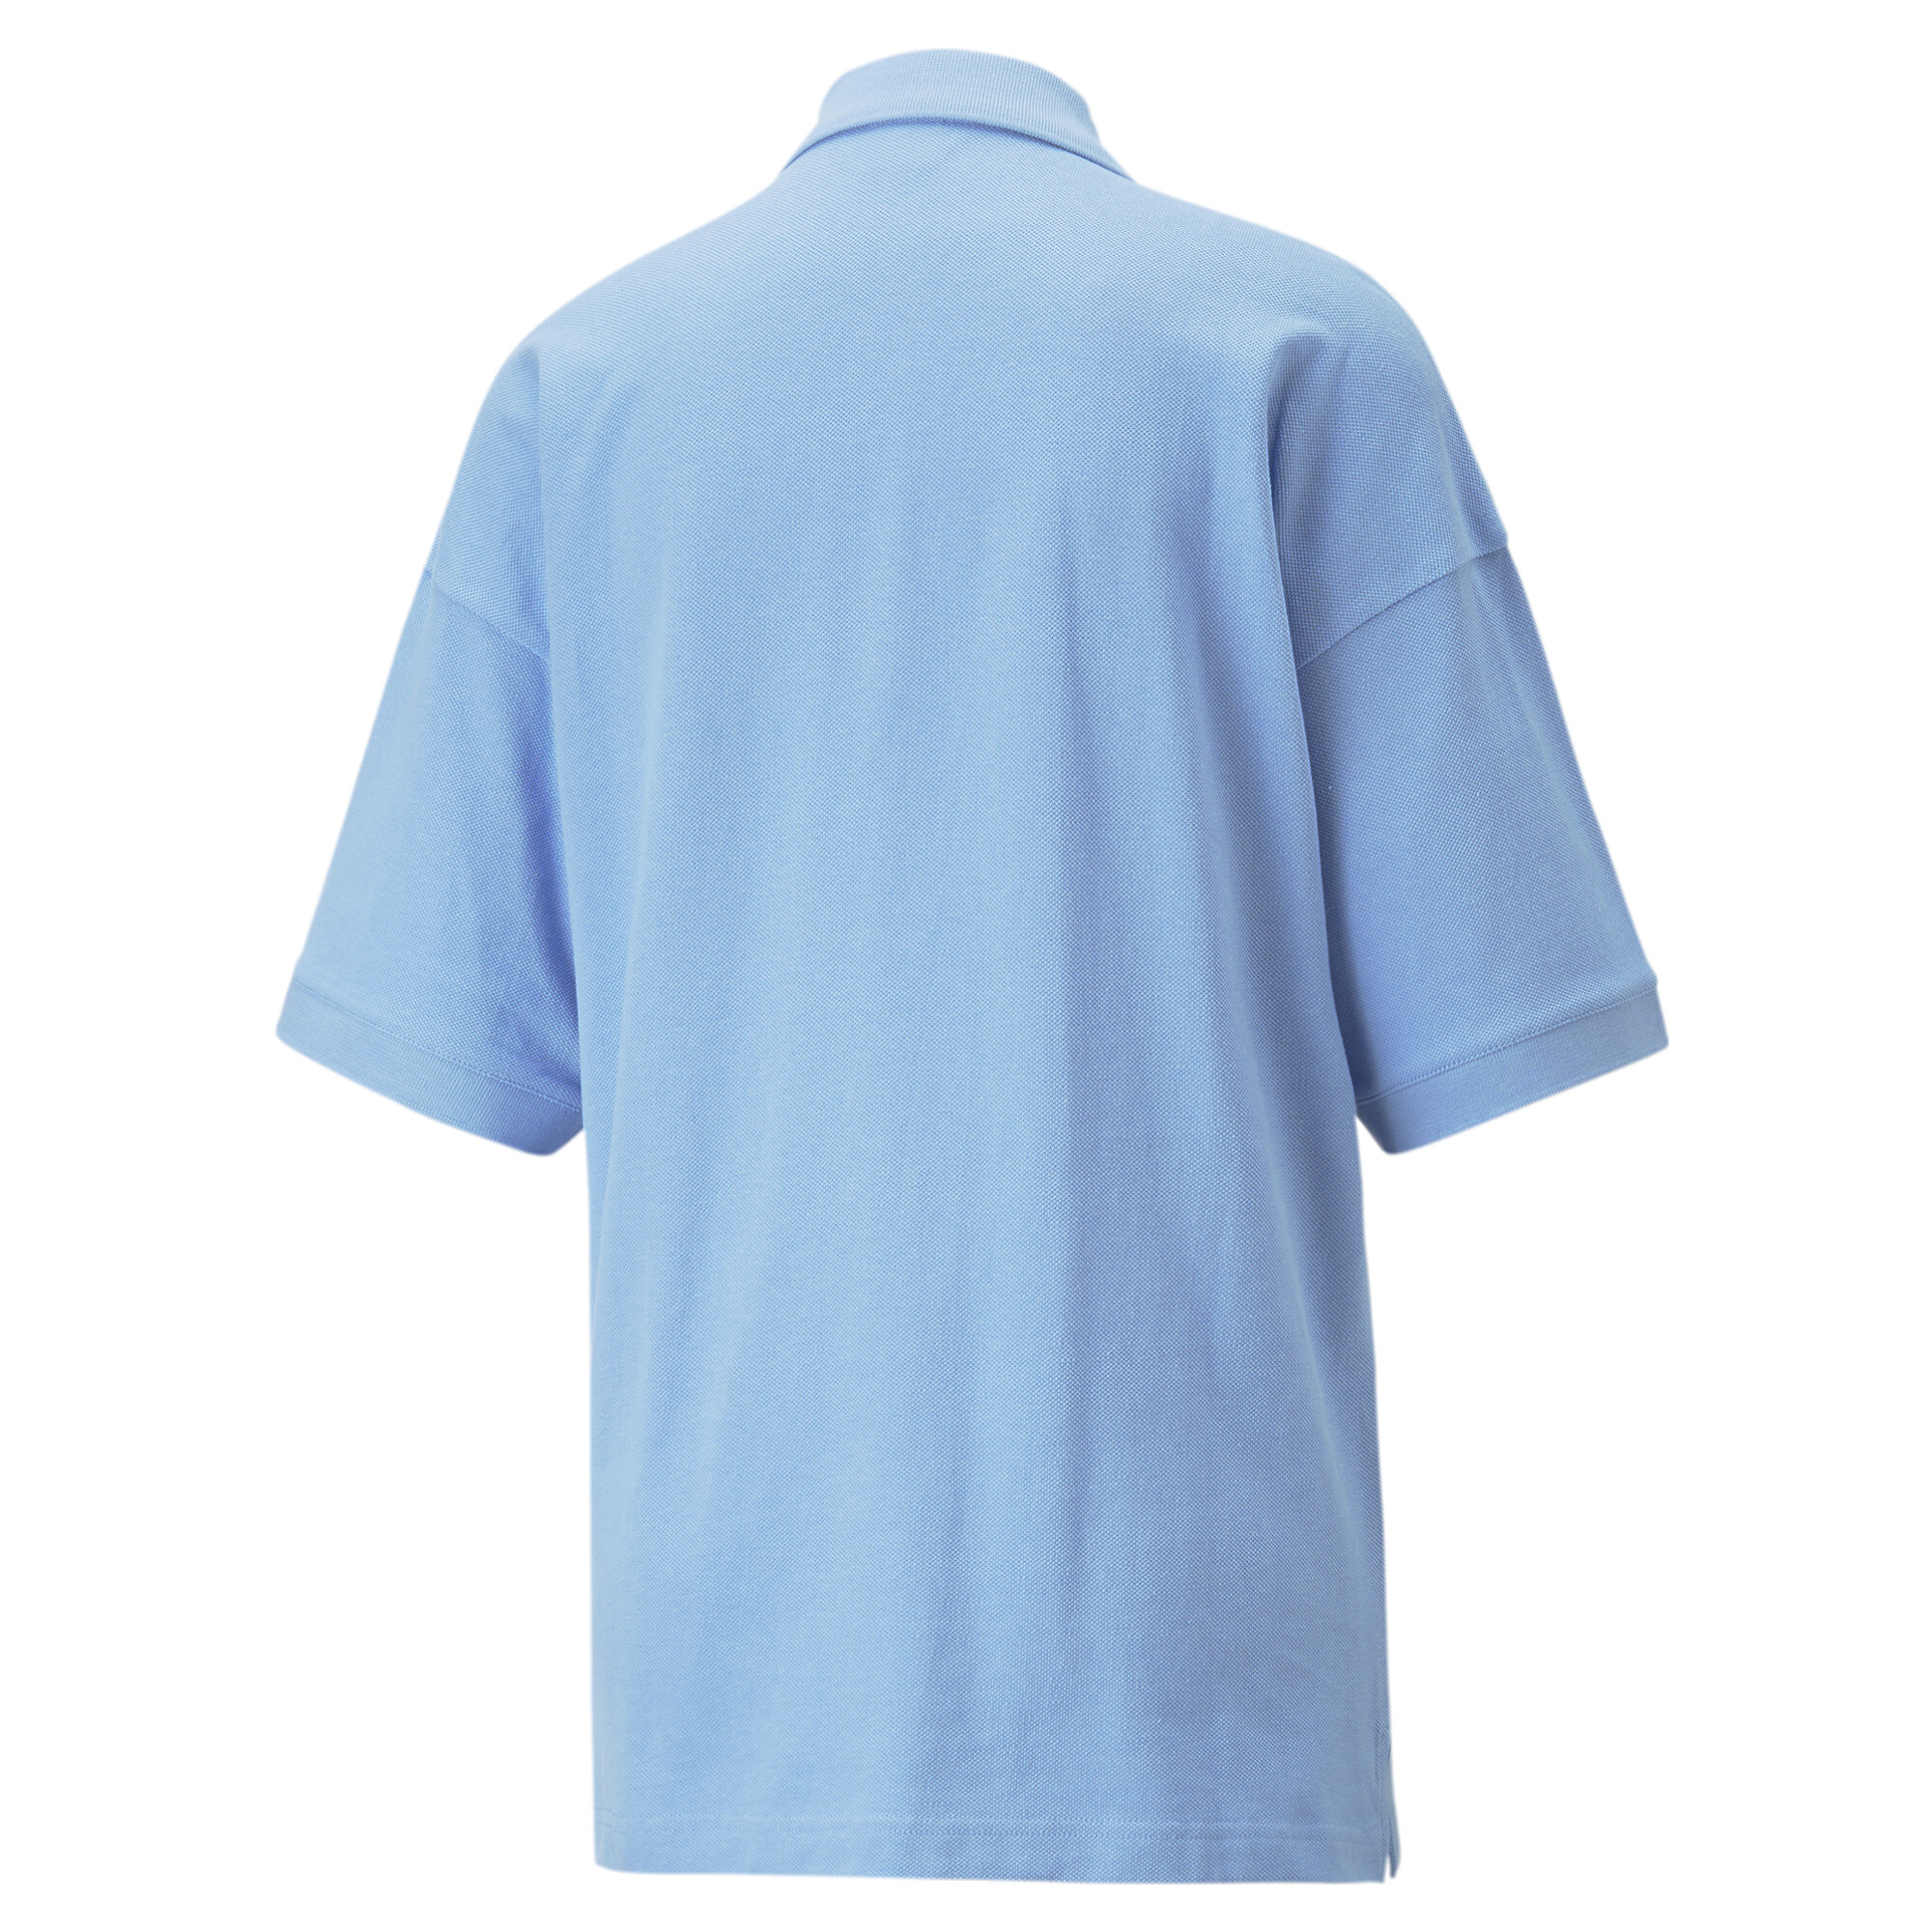 Women's PUMA Classics Shirt Women In 80 - Blue, Size Large